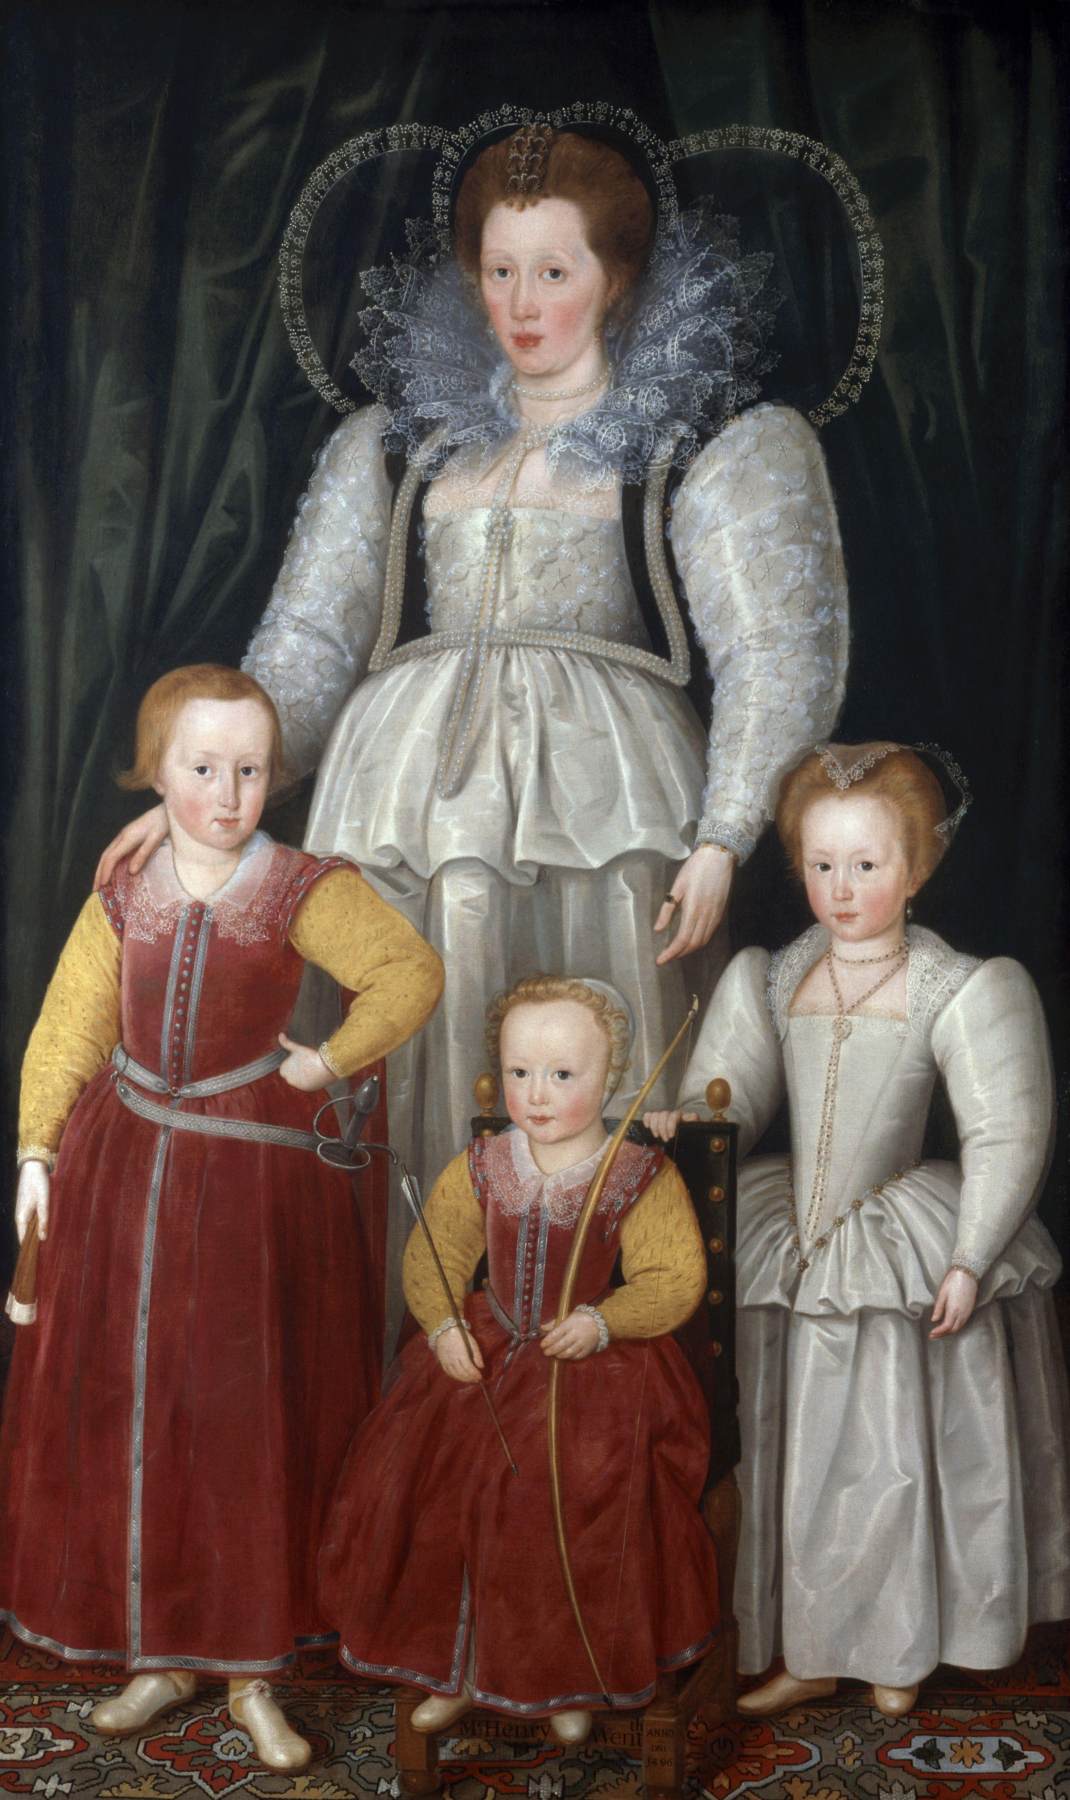 Ana, Lady Papież z dziećmi